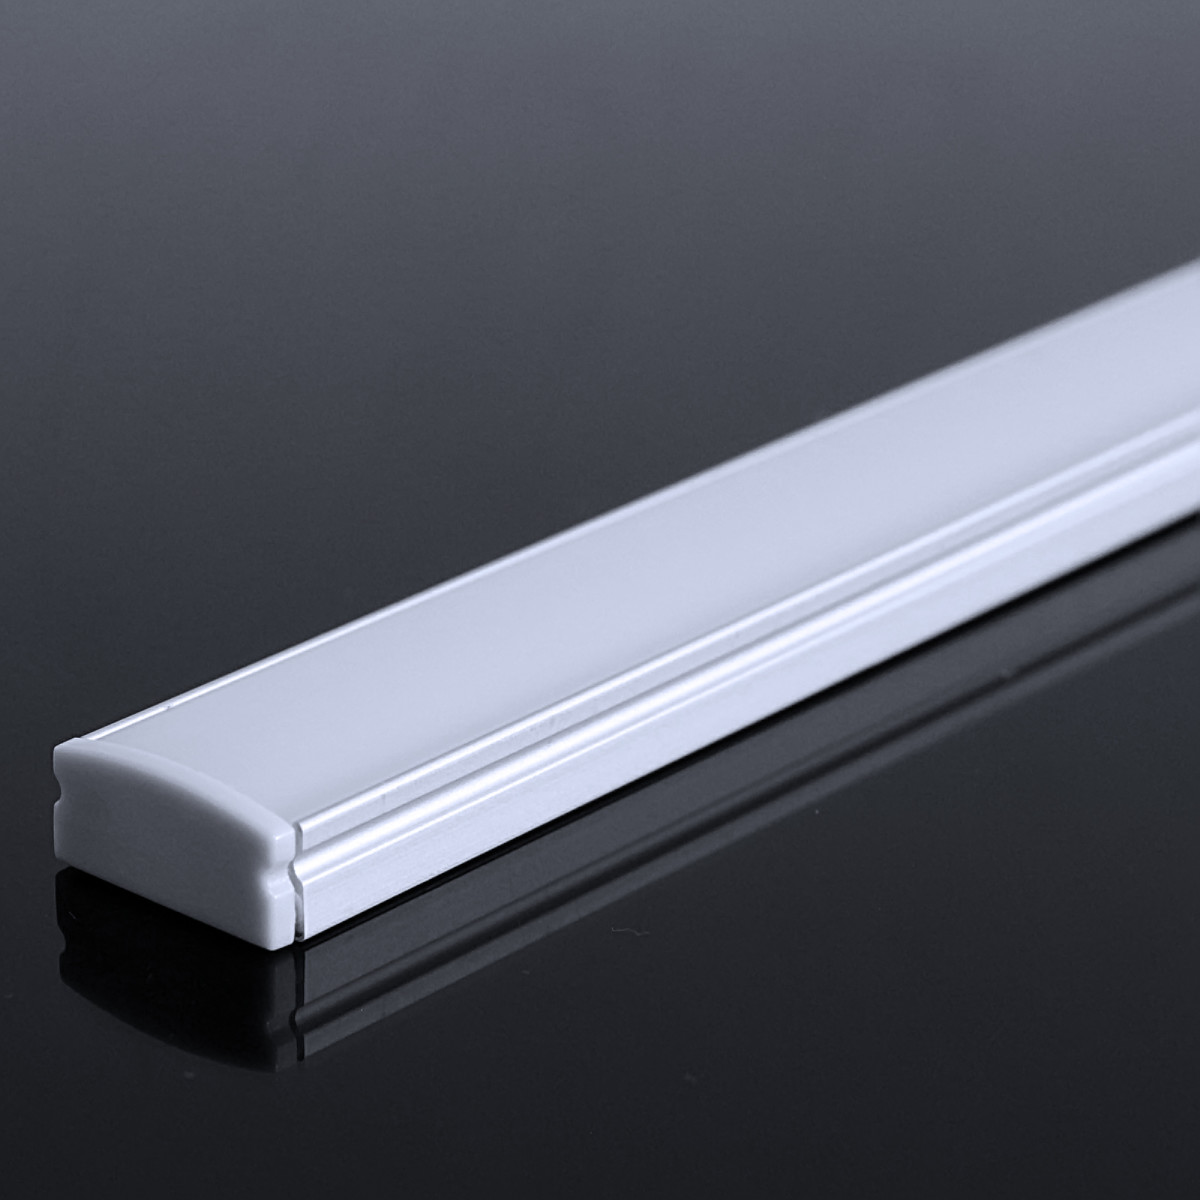 LED Flachprofil "Slim-Line" | Abdeckung diffus | Zuschnitt auf 73cm |